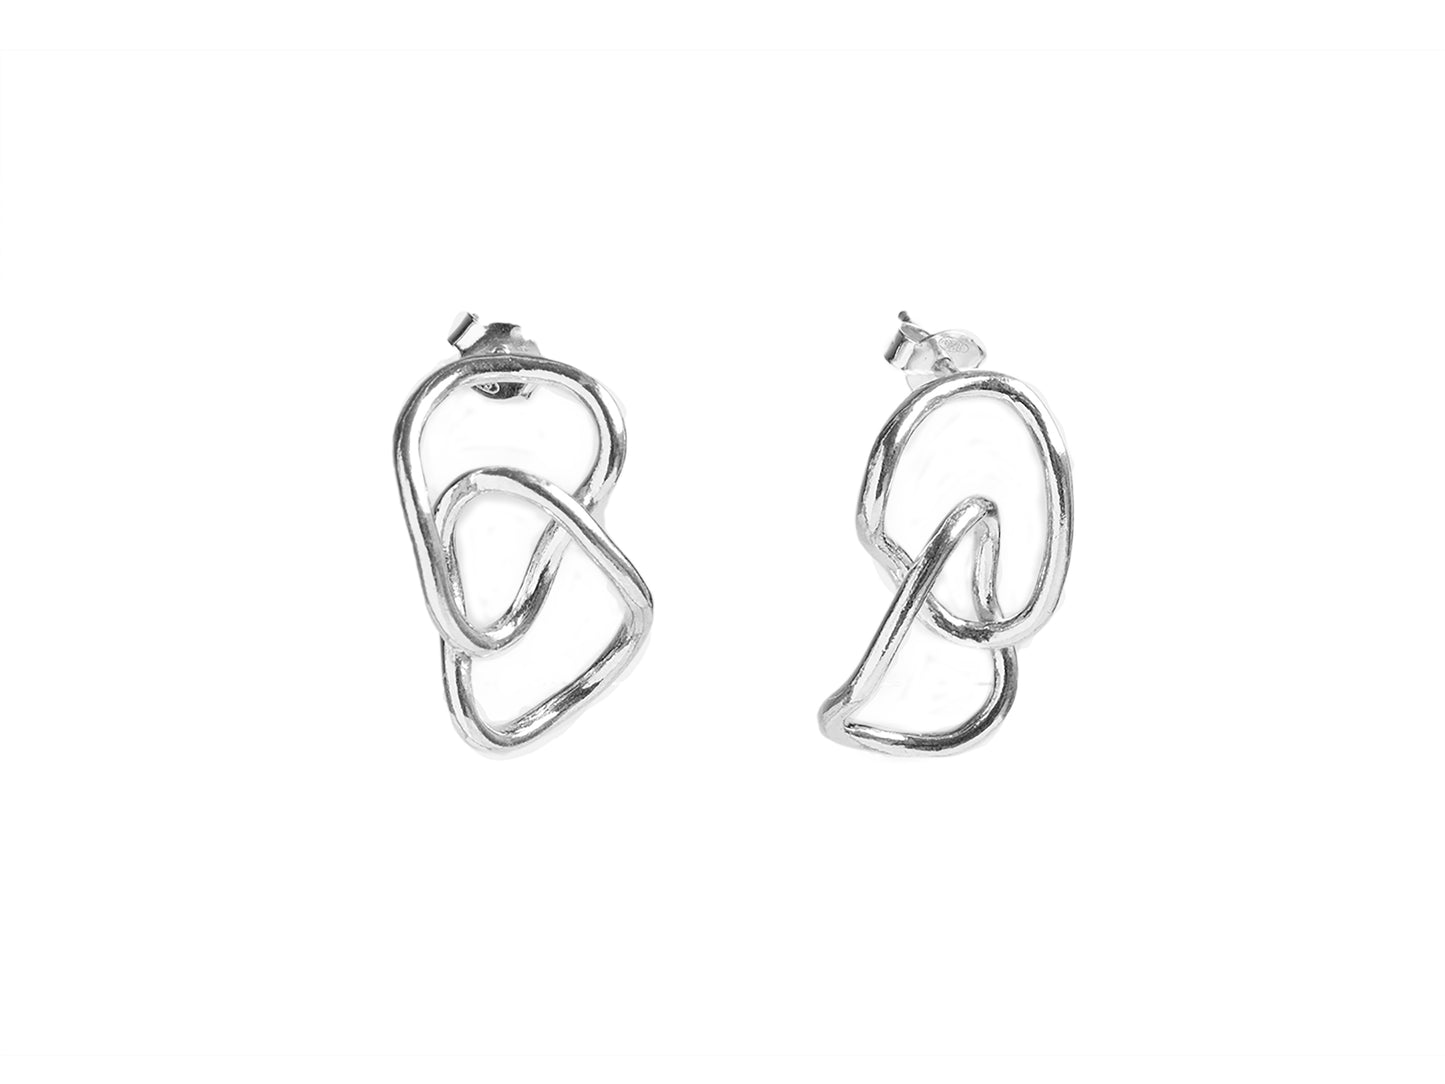 Interlinked silver earrings